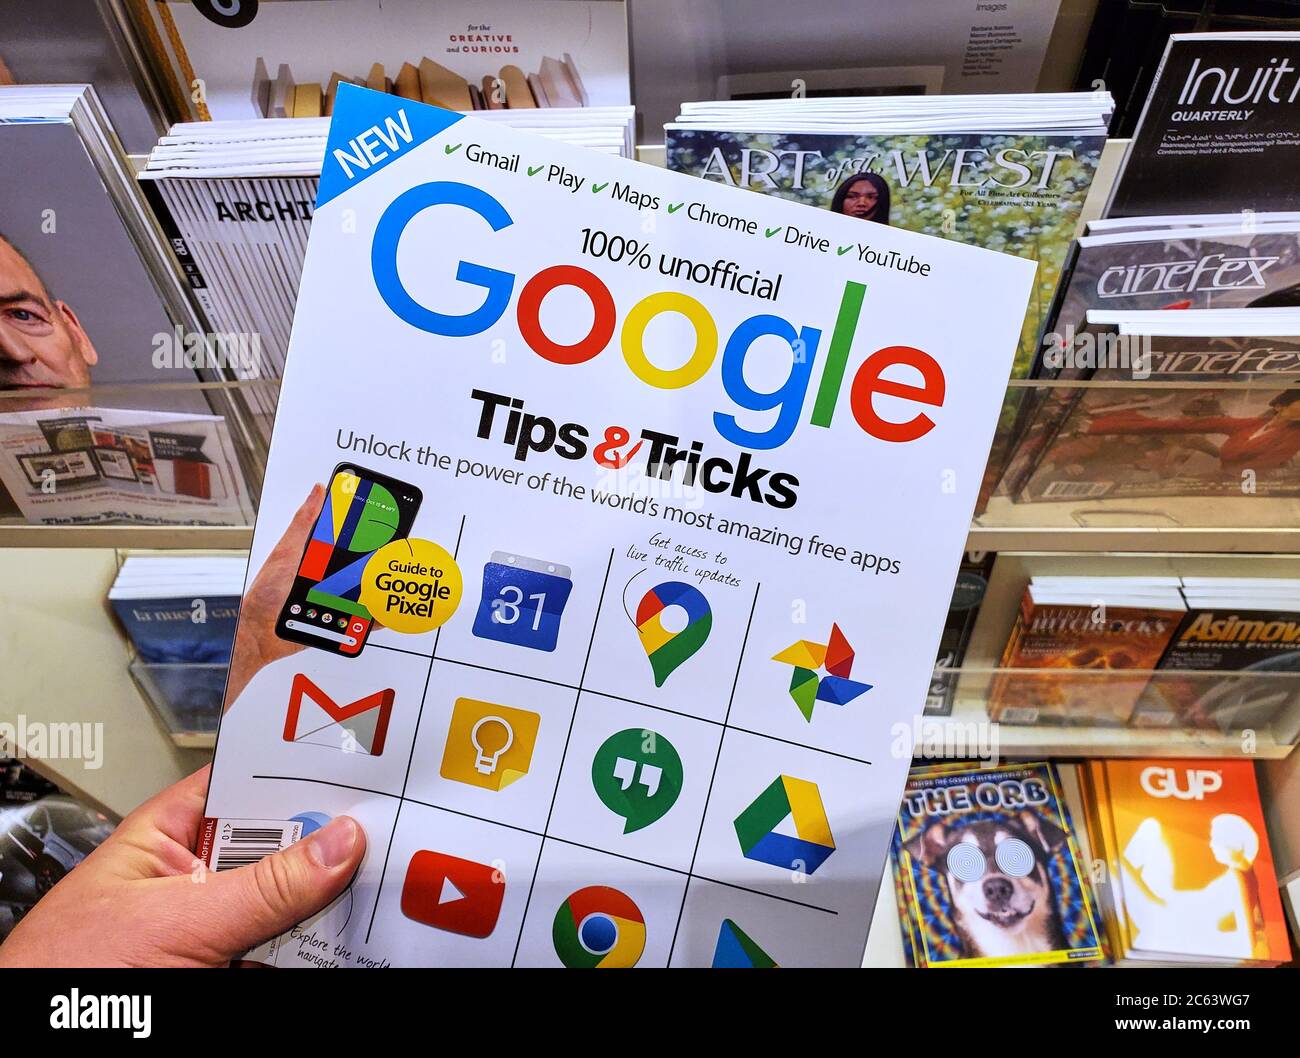 Montreal, Canadá - 30 de junio de 2020: Google Tips and Tricks revista no oficial con iconos de Google en la portada en una mano sobre una pila de revistas. Foto de stock